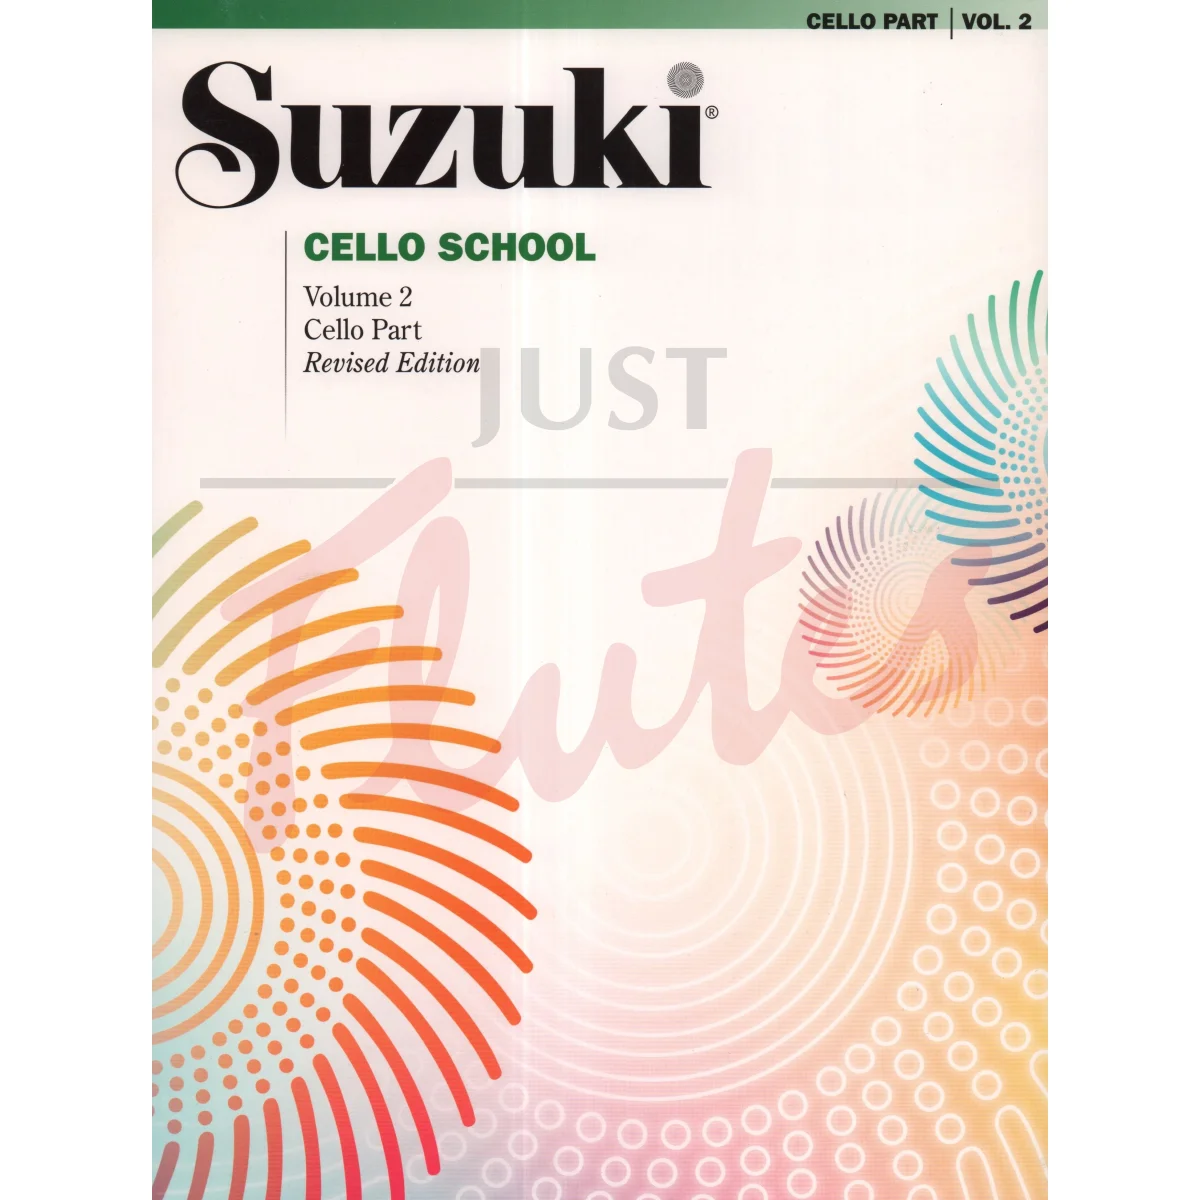 Suzuki Cello School Vol. 2 [Cello Part]